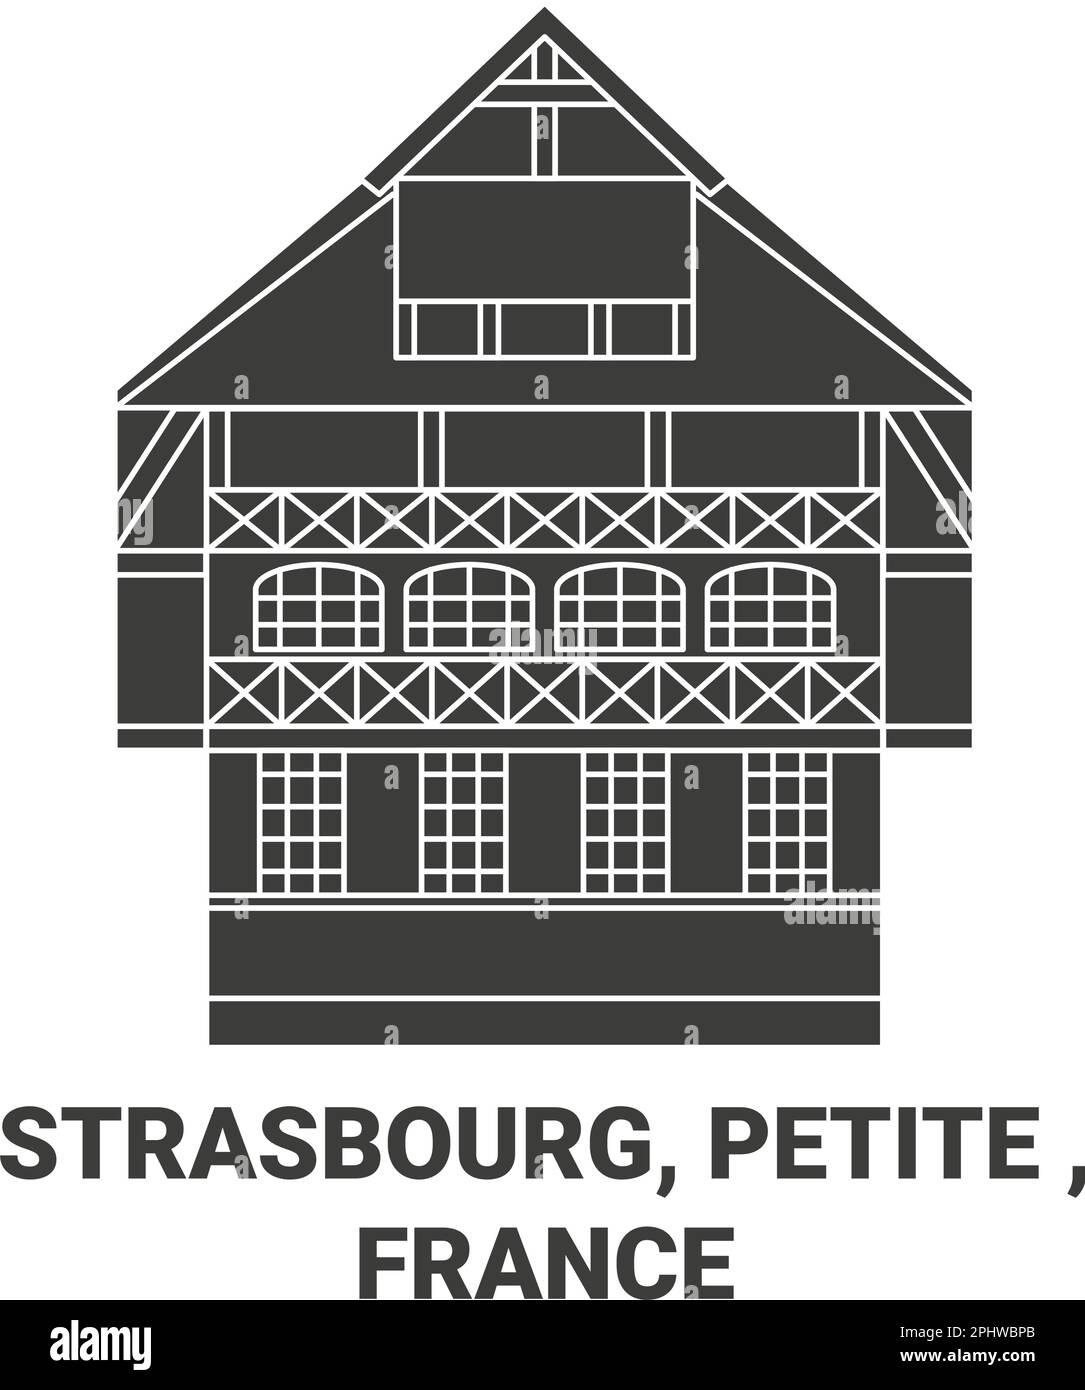 France, Strasbourg, Petite travel landmark vector illustration Stock Vector